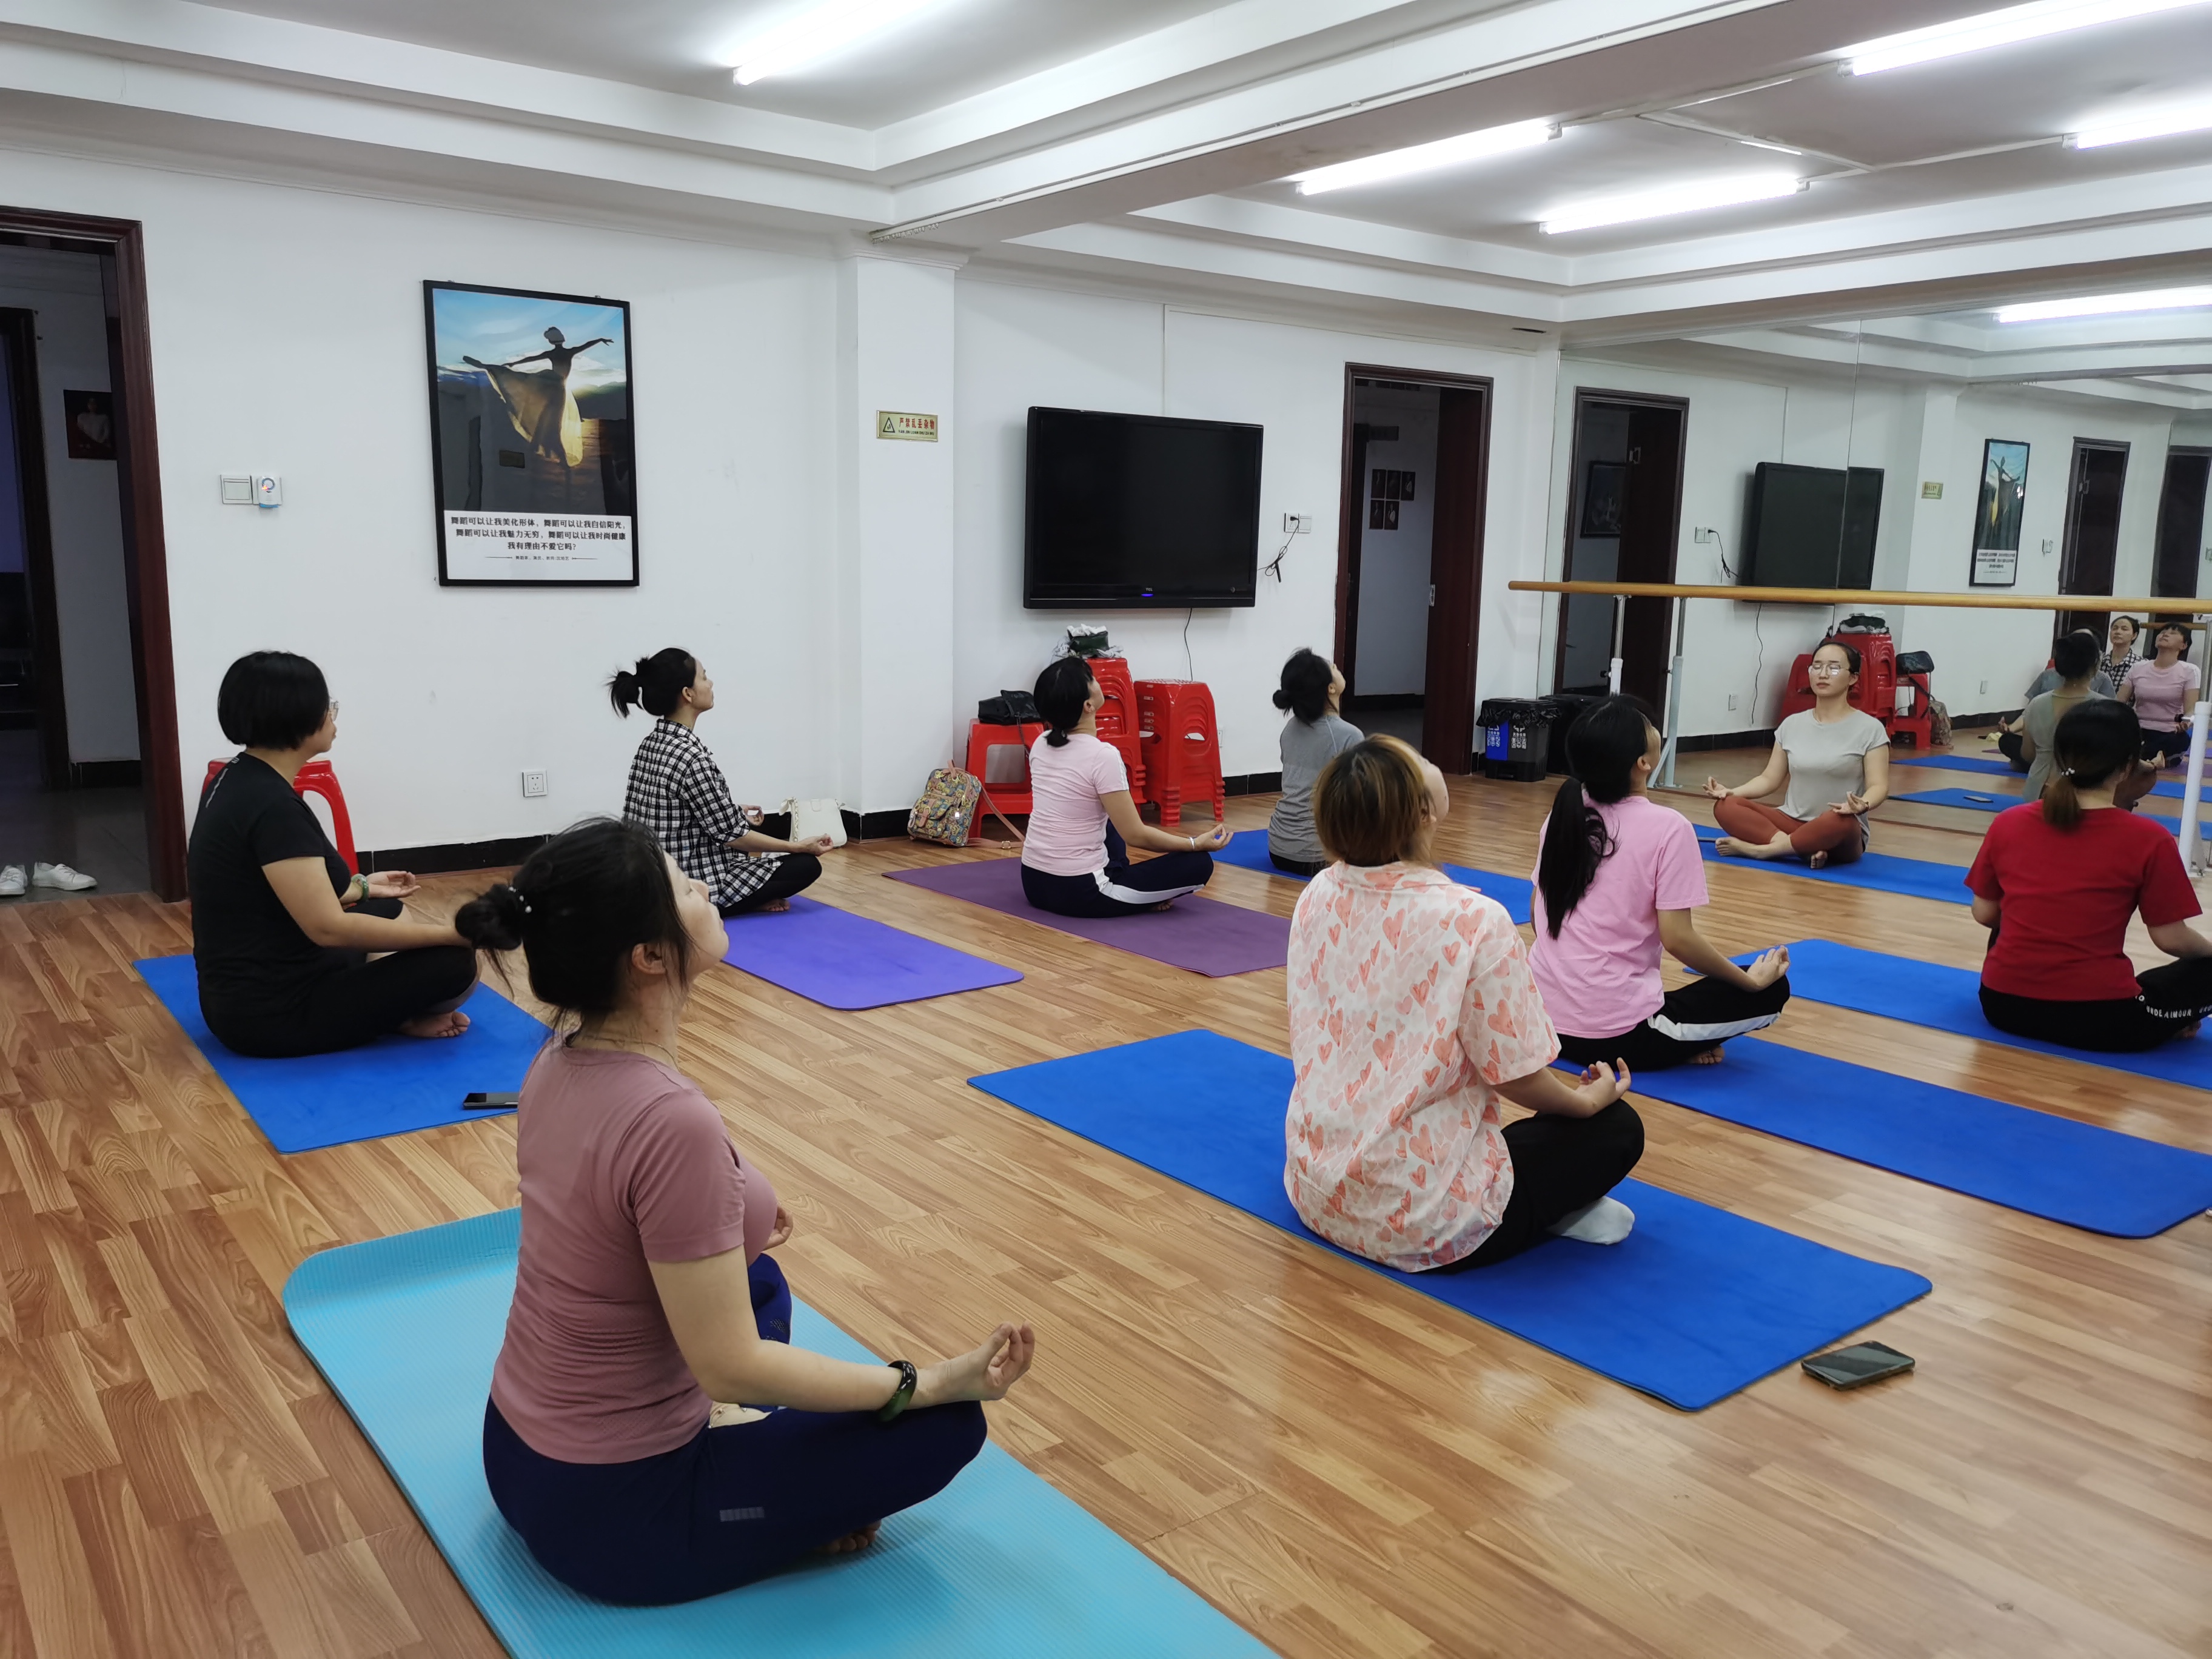 【新时代文明实践】订单式服务&暑期公益培训瑜珈班免费培训